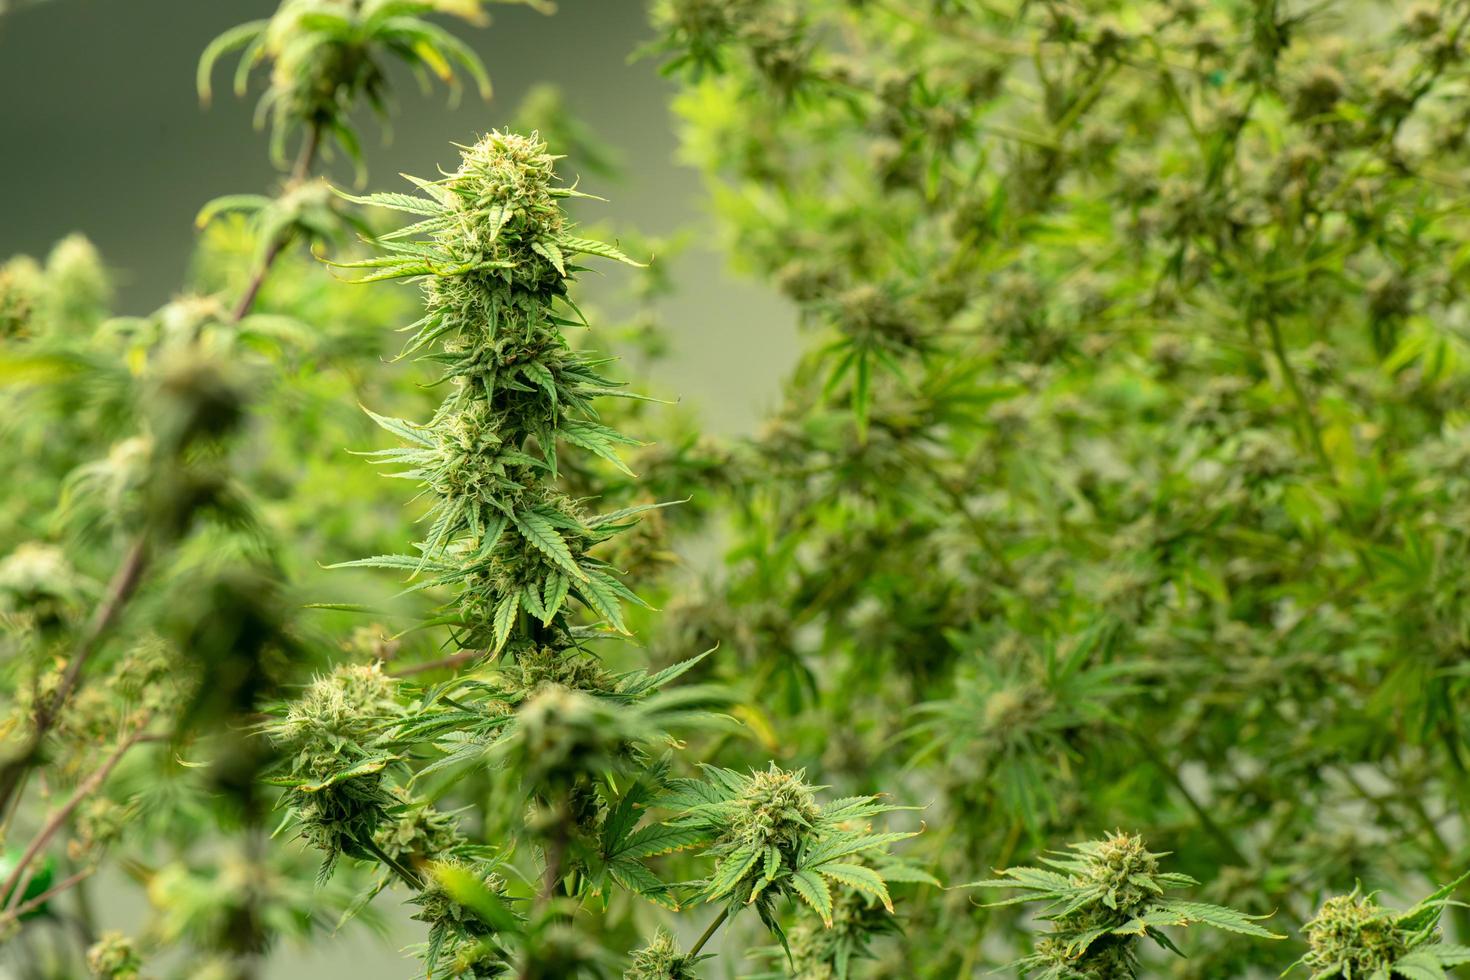 cannabis in fiore pronta per essere utilizzata per l'estrazione in vari prodotti medici e alimentari o bevande anche per l'intrattenimento. foto